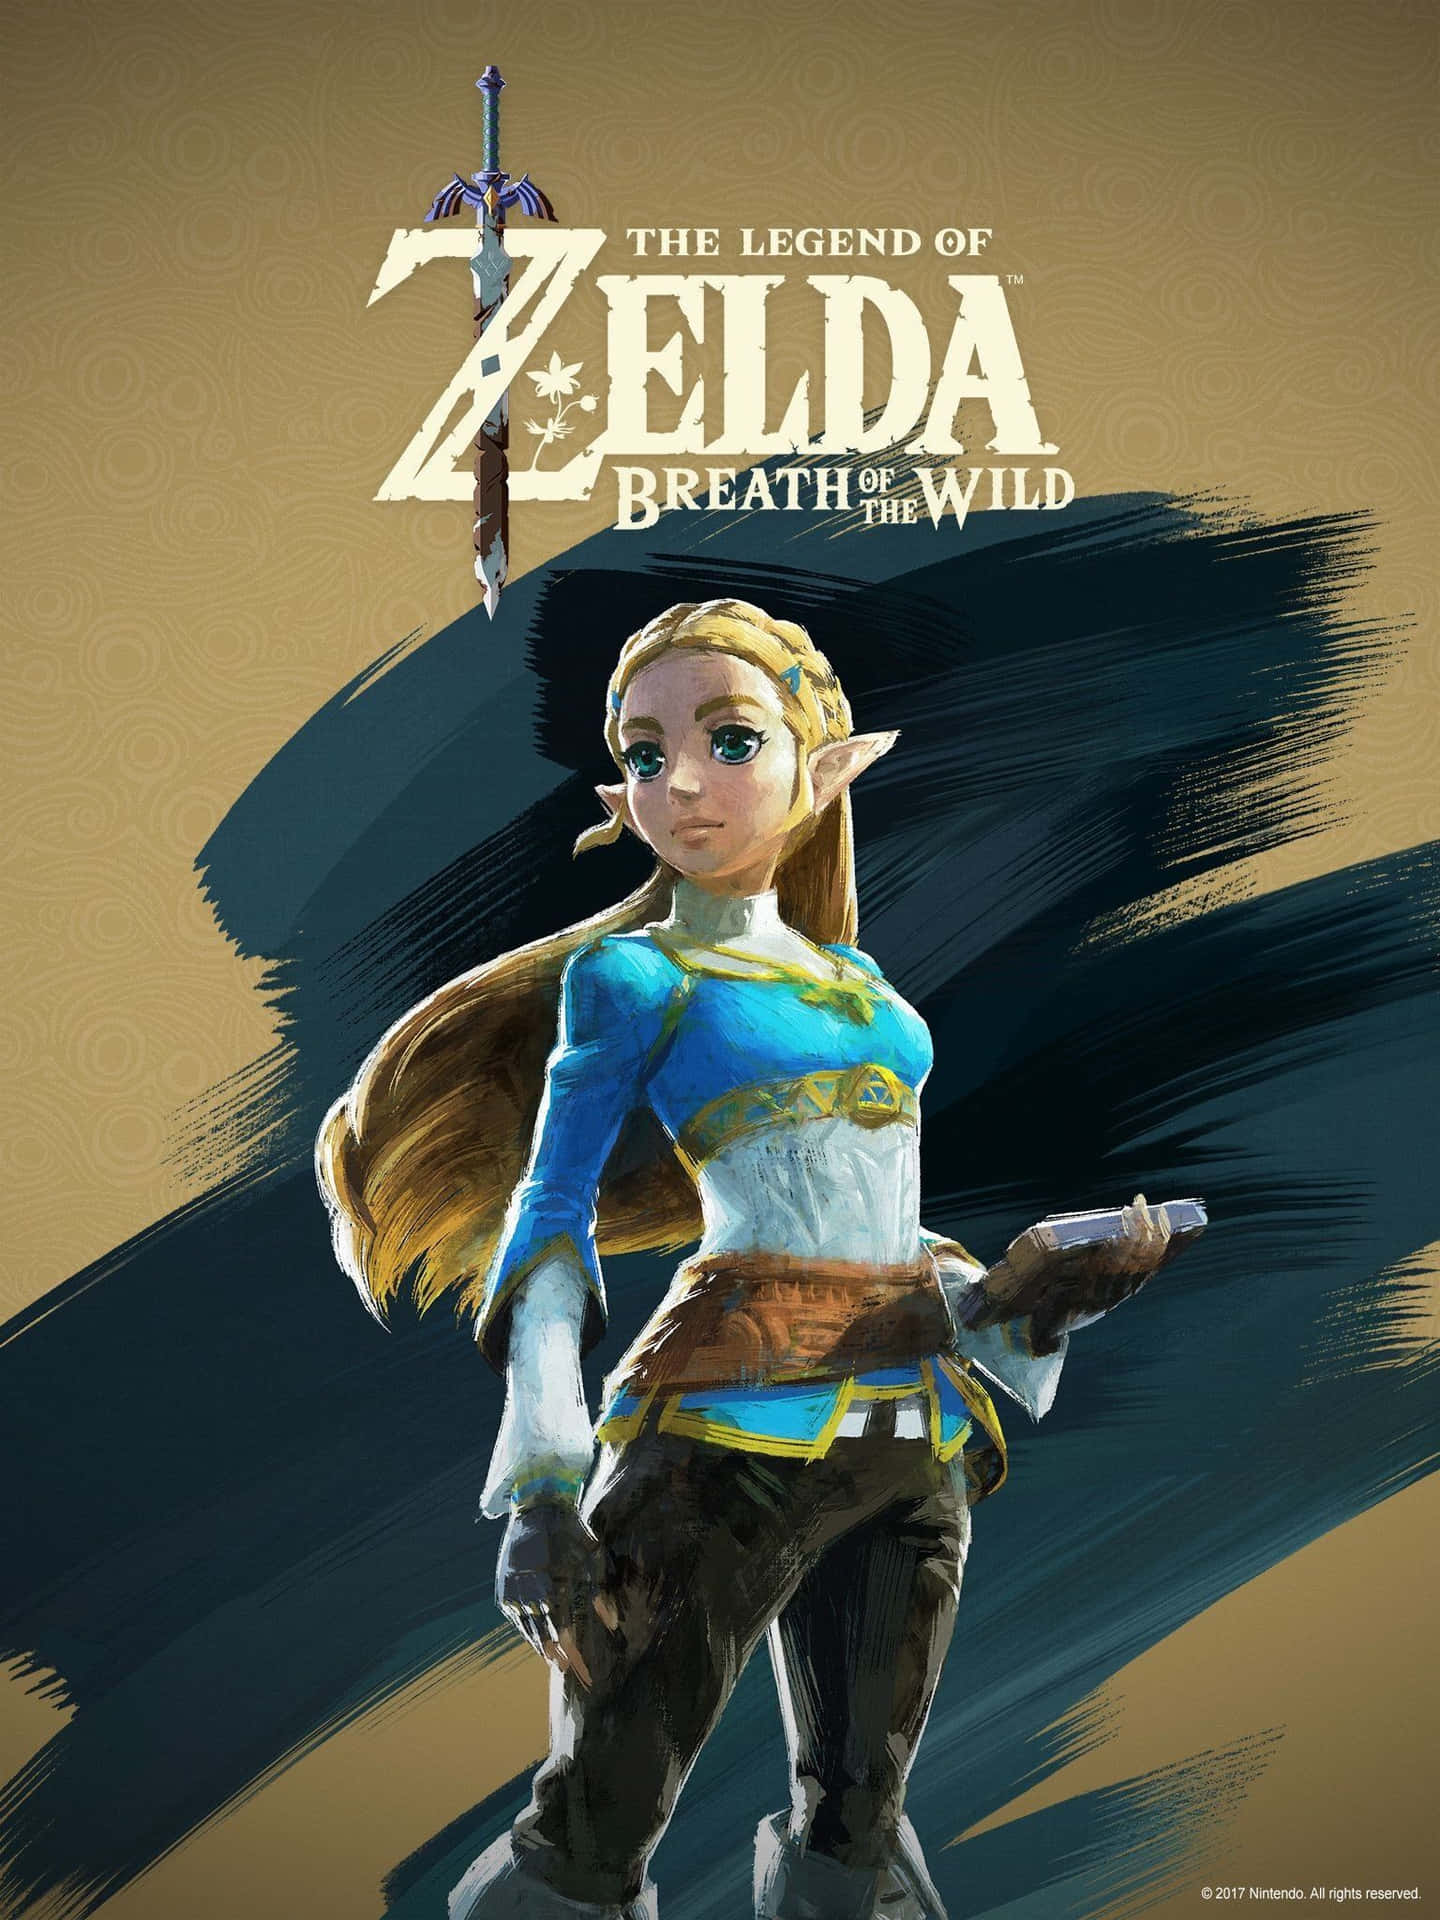 The Legend of Zelda Art Wallpapers - Zelda Wallpapers for iPhone